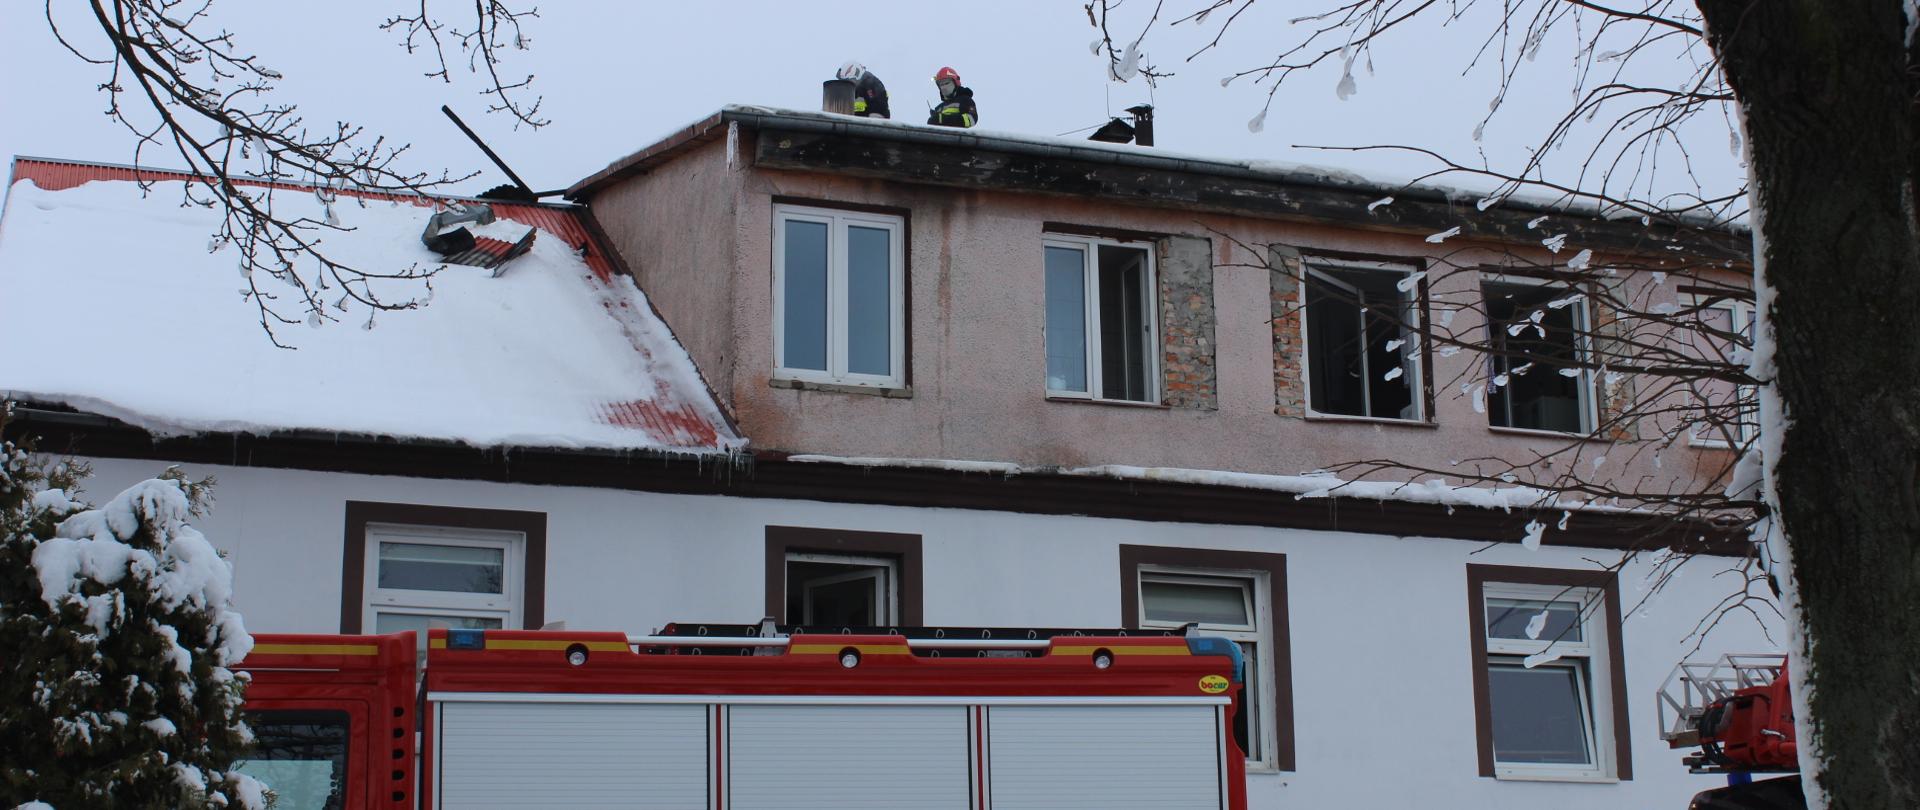 Front budynku handlowo-usługowego. Na dachu pracujący strażacy. Przed budynkiem stoi samochód ratowniczo-gaśniczy.